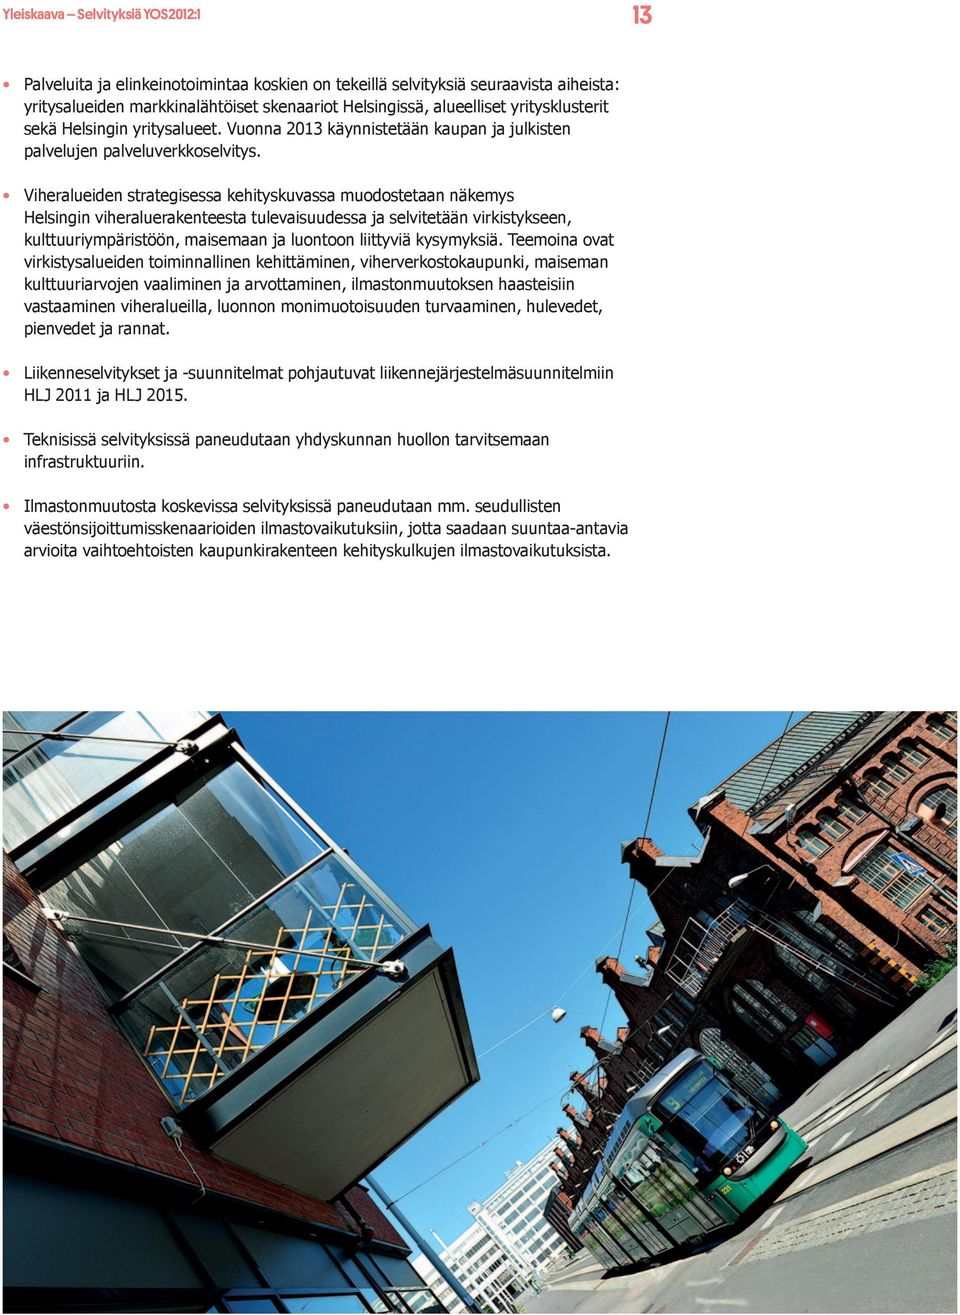 Viheralueiden strategisessa kehityskuvassa muodostetaan näkemys Helsingin viheraluerakenteesta tulevaisuudessa ja selvitetään virkistykseen, kulttuuriympäristöön, maisemaan ja luontoon liittyviä